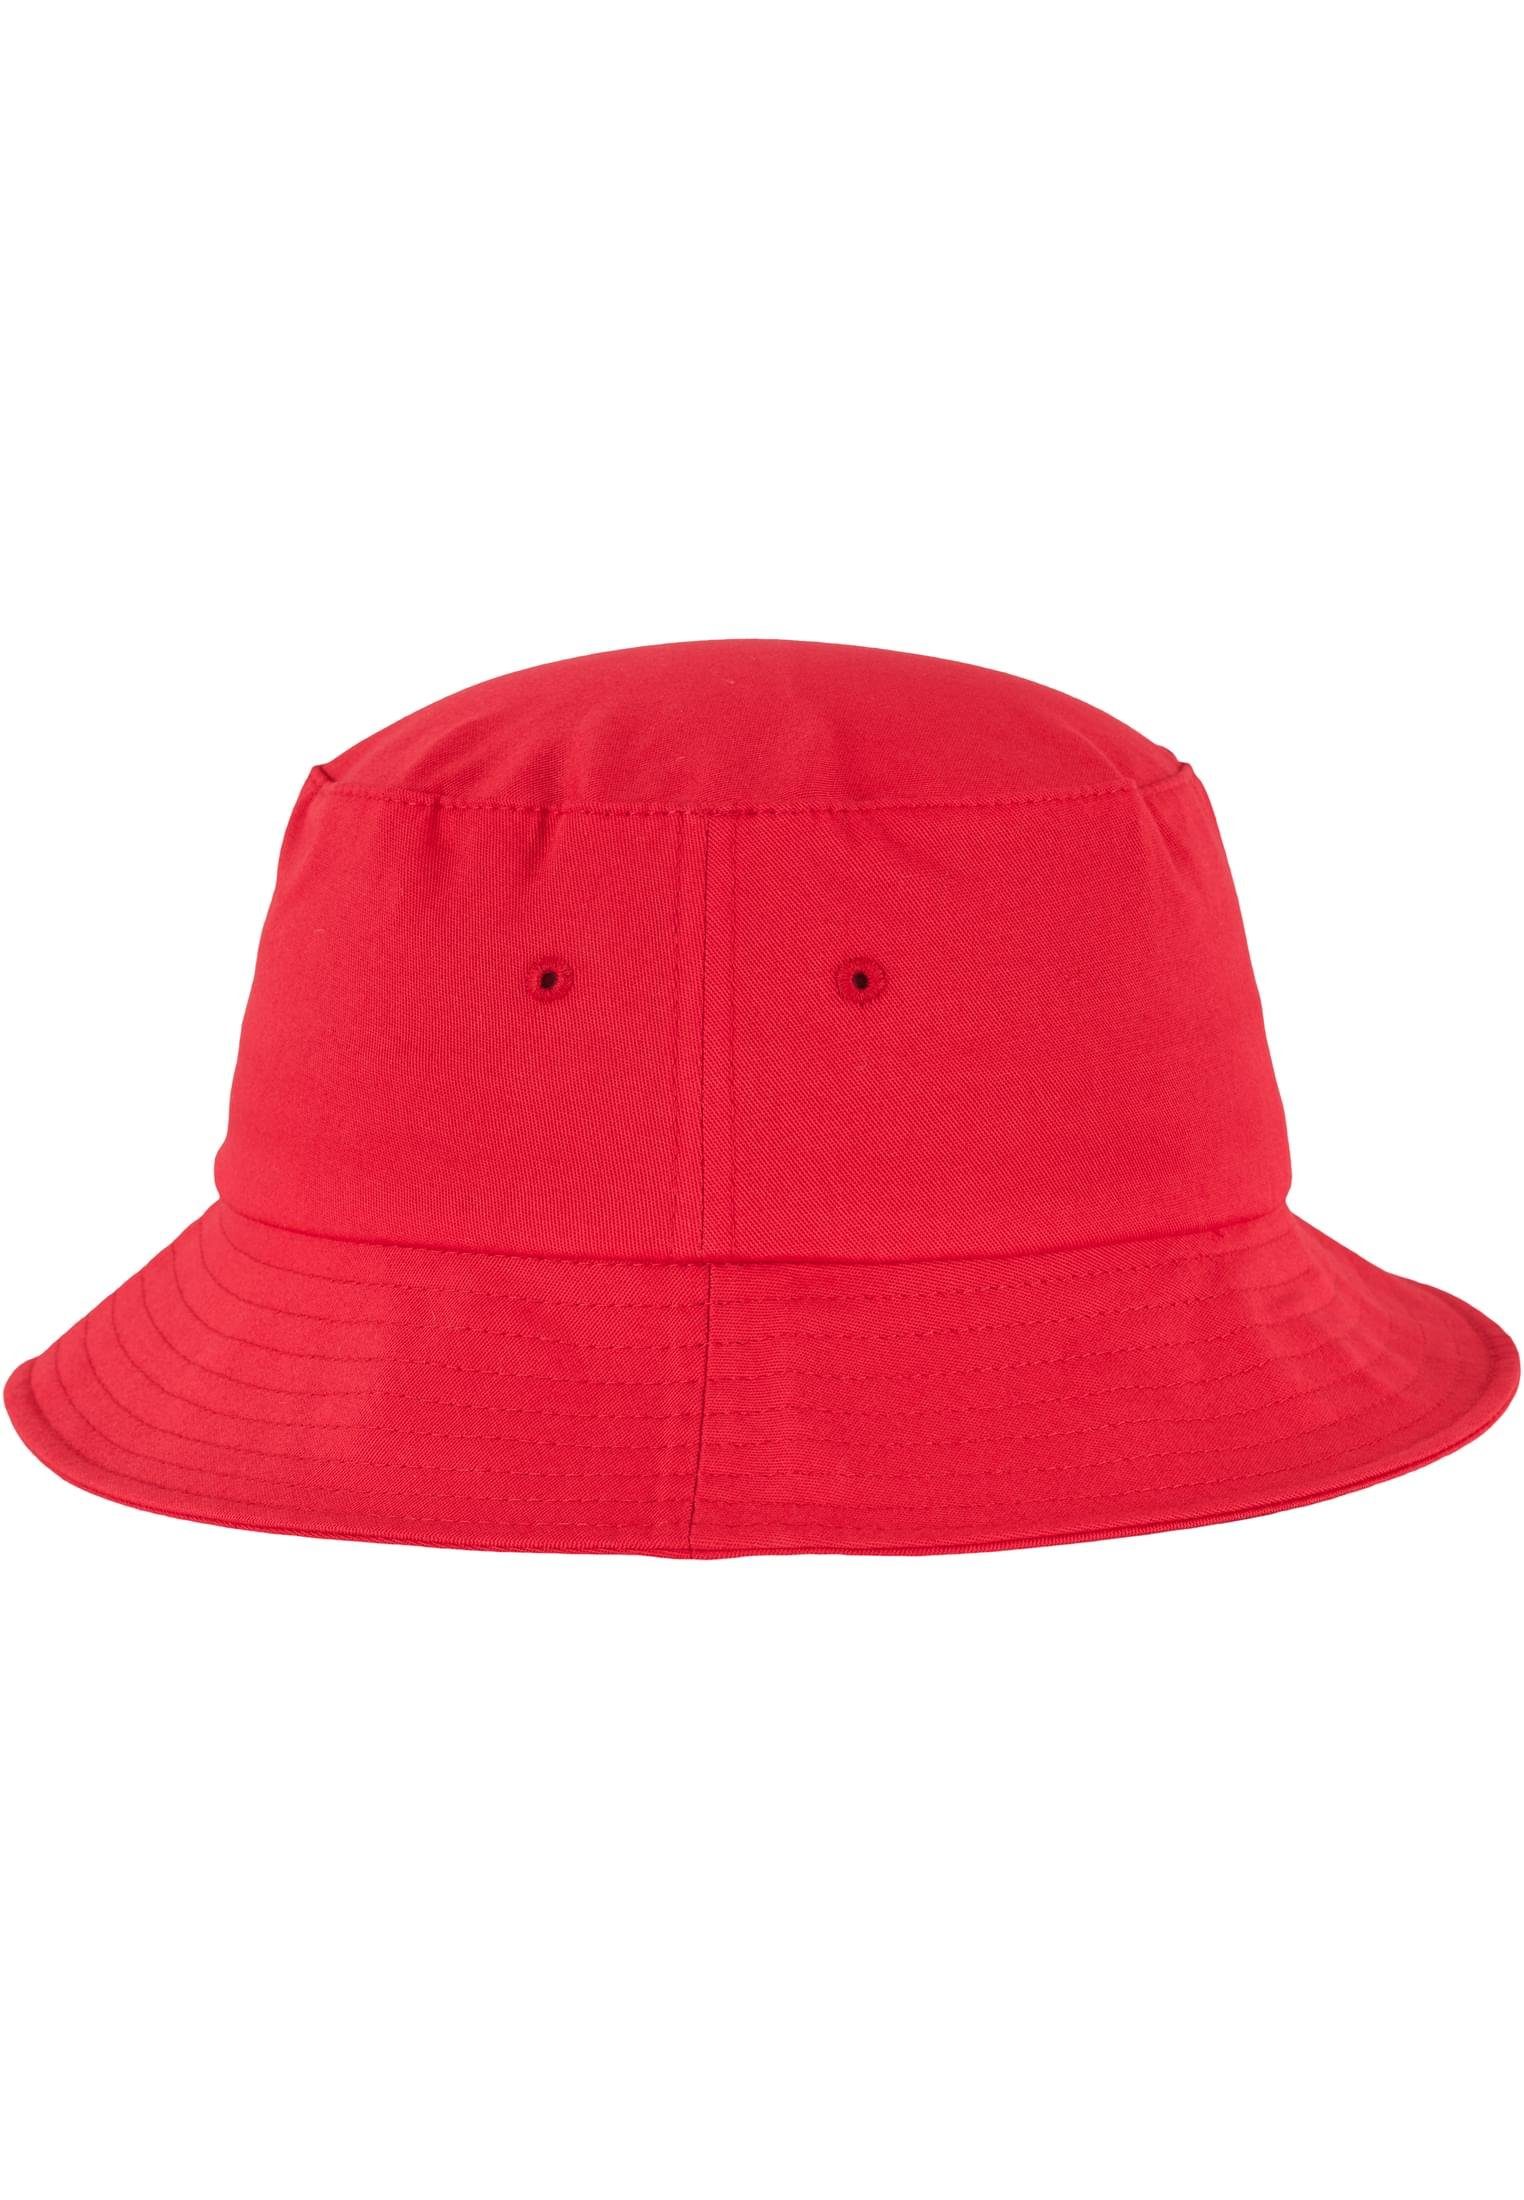 Flex Flexfit Flexfit red Cotton Cap Accessoires Twill Hat Bucket